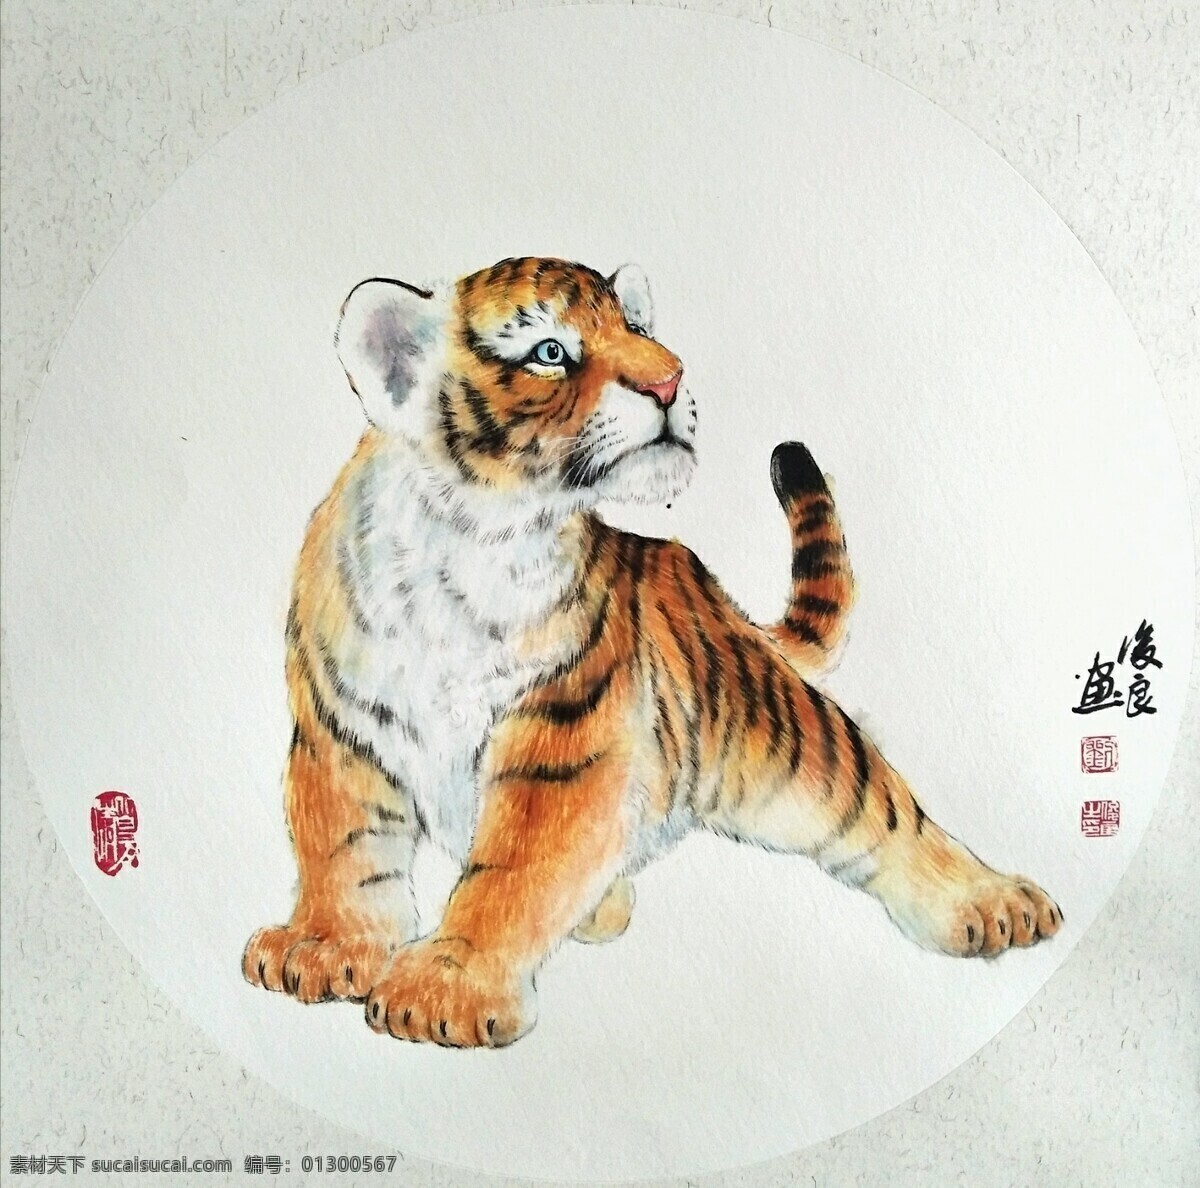 画家 刘 俊良 国画作品 老虎 刘俊良 国画 作品 文化艺术 绘画书法